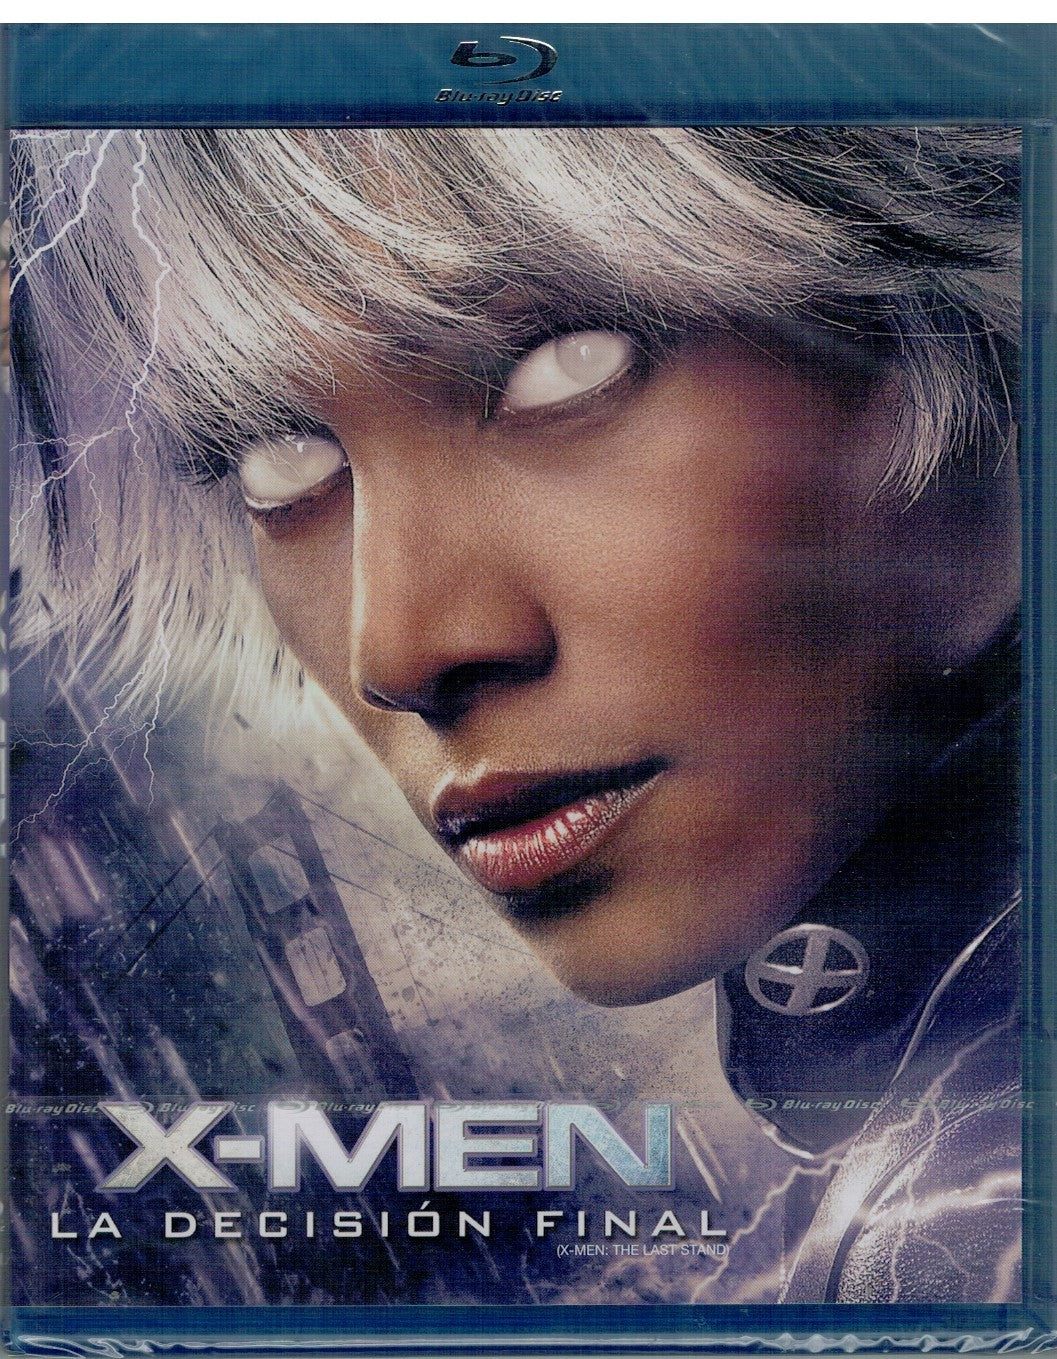 X Men: La decisión final (X-Men 3: The Last Stand) (Bluray Nuevo)